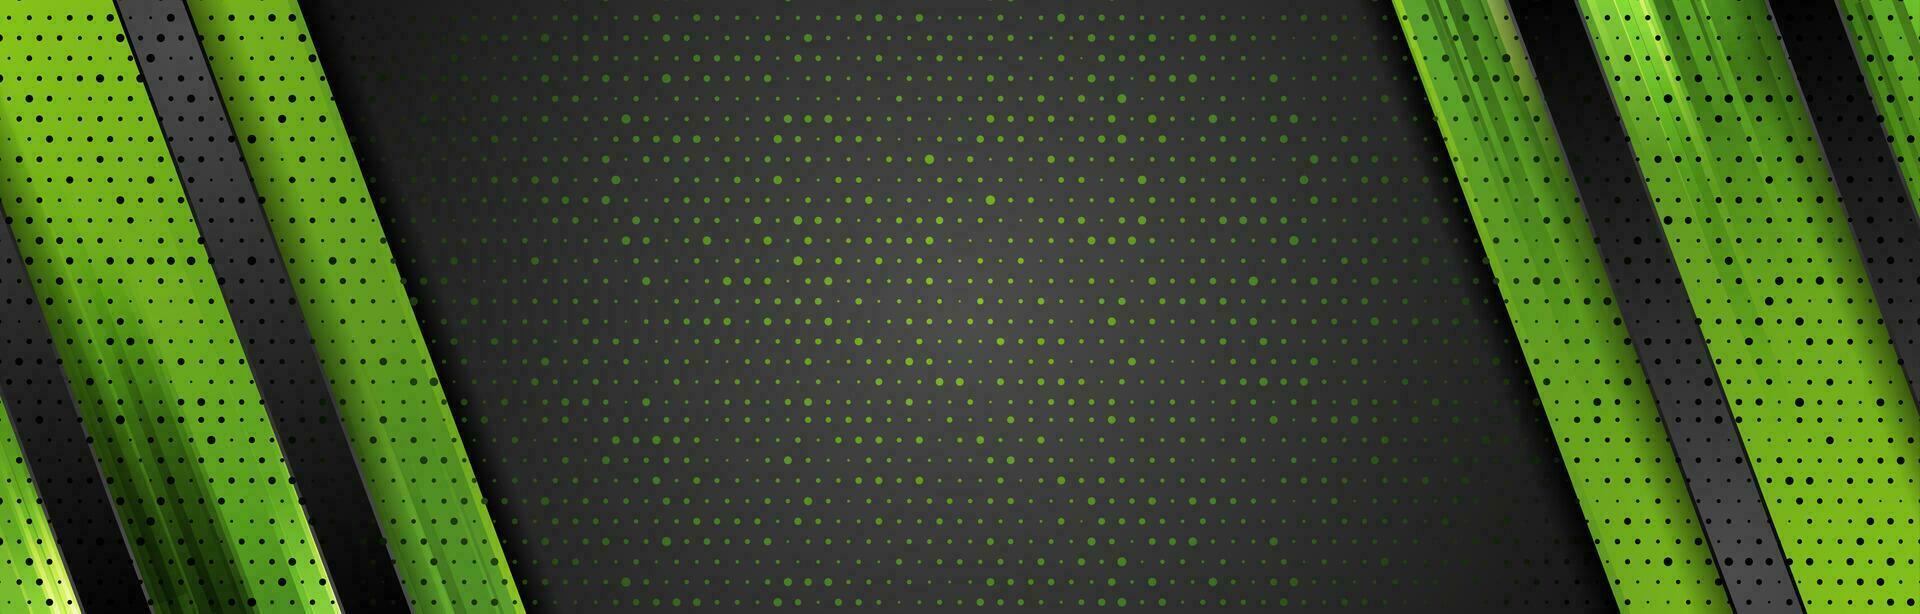 svart och grön abstrakt företags- bakgrund vektor